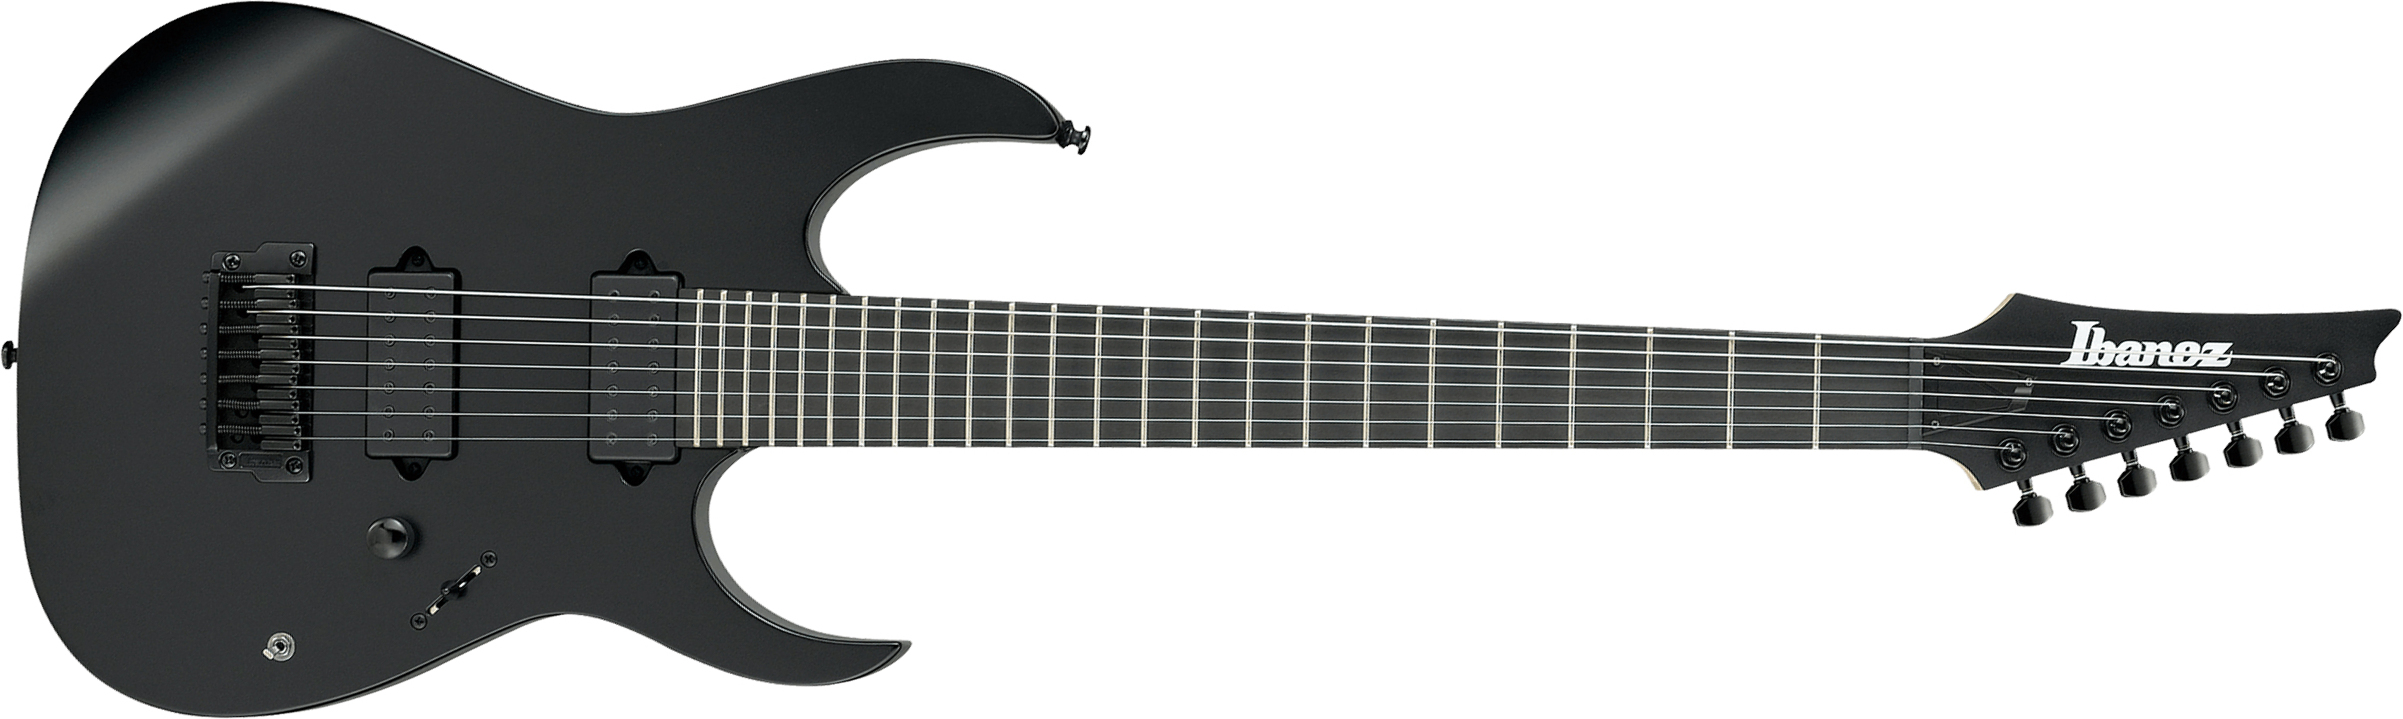 Ibanez Rgixl7 Bkf Iron Label Hh Dimarzio Ht Eb - Black Flat - 7-snarige elektrische gitaar - Main picture